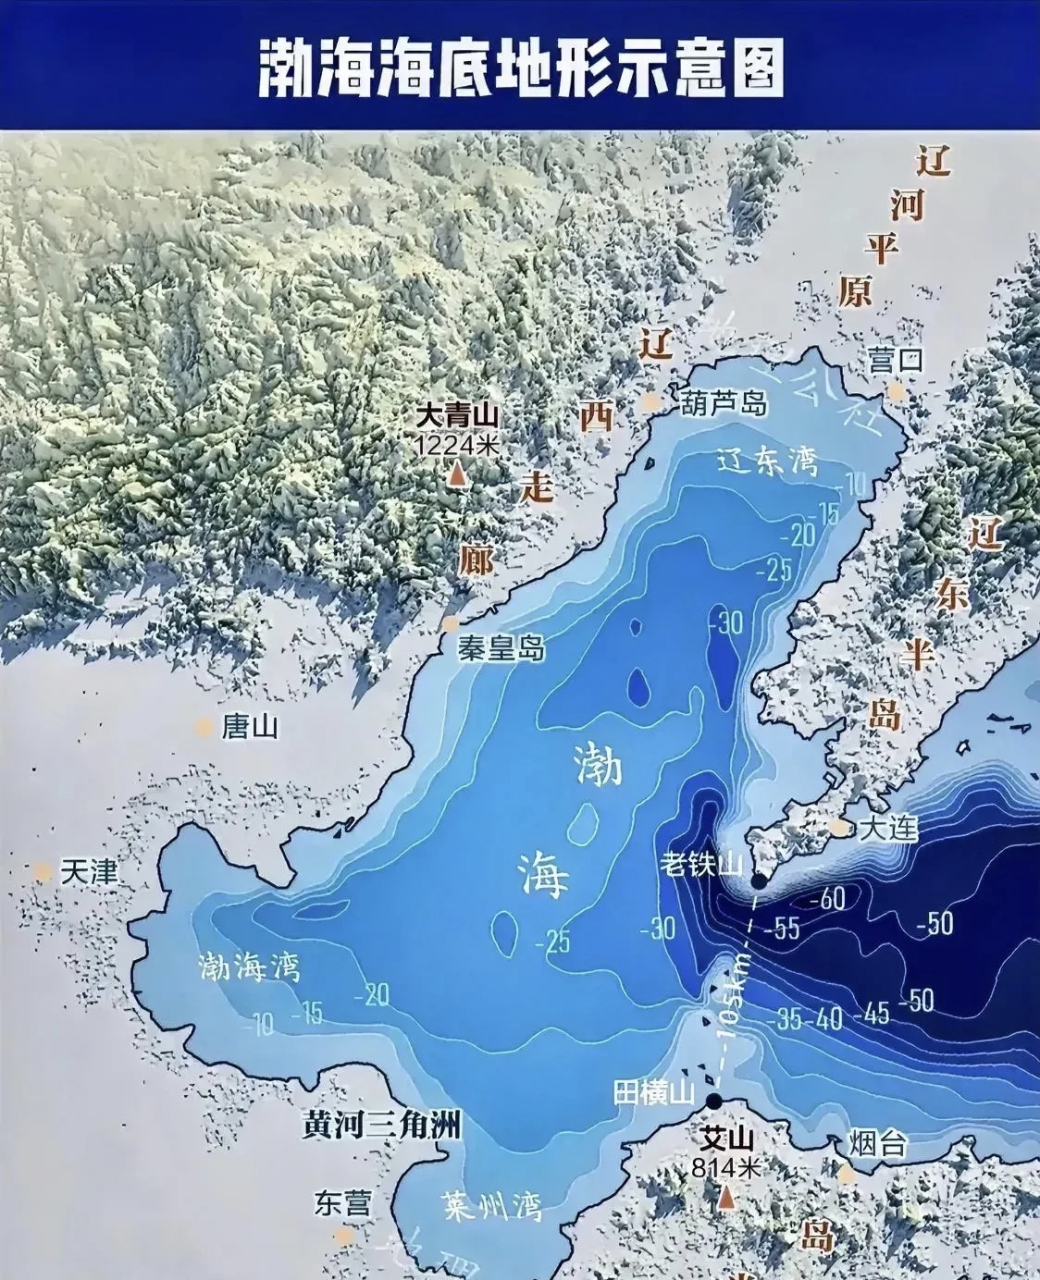 渤海深浅图,旅顺老铁山位置真是天然良港,扼守京津咽喉